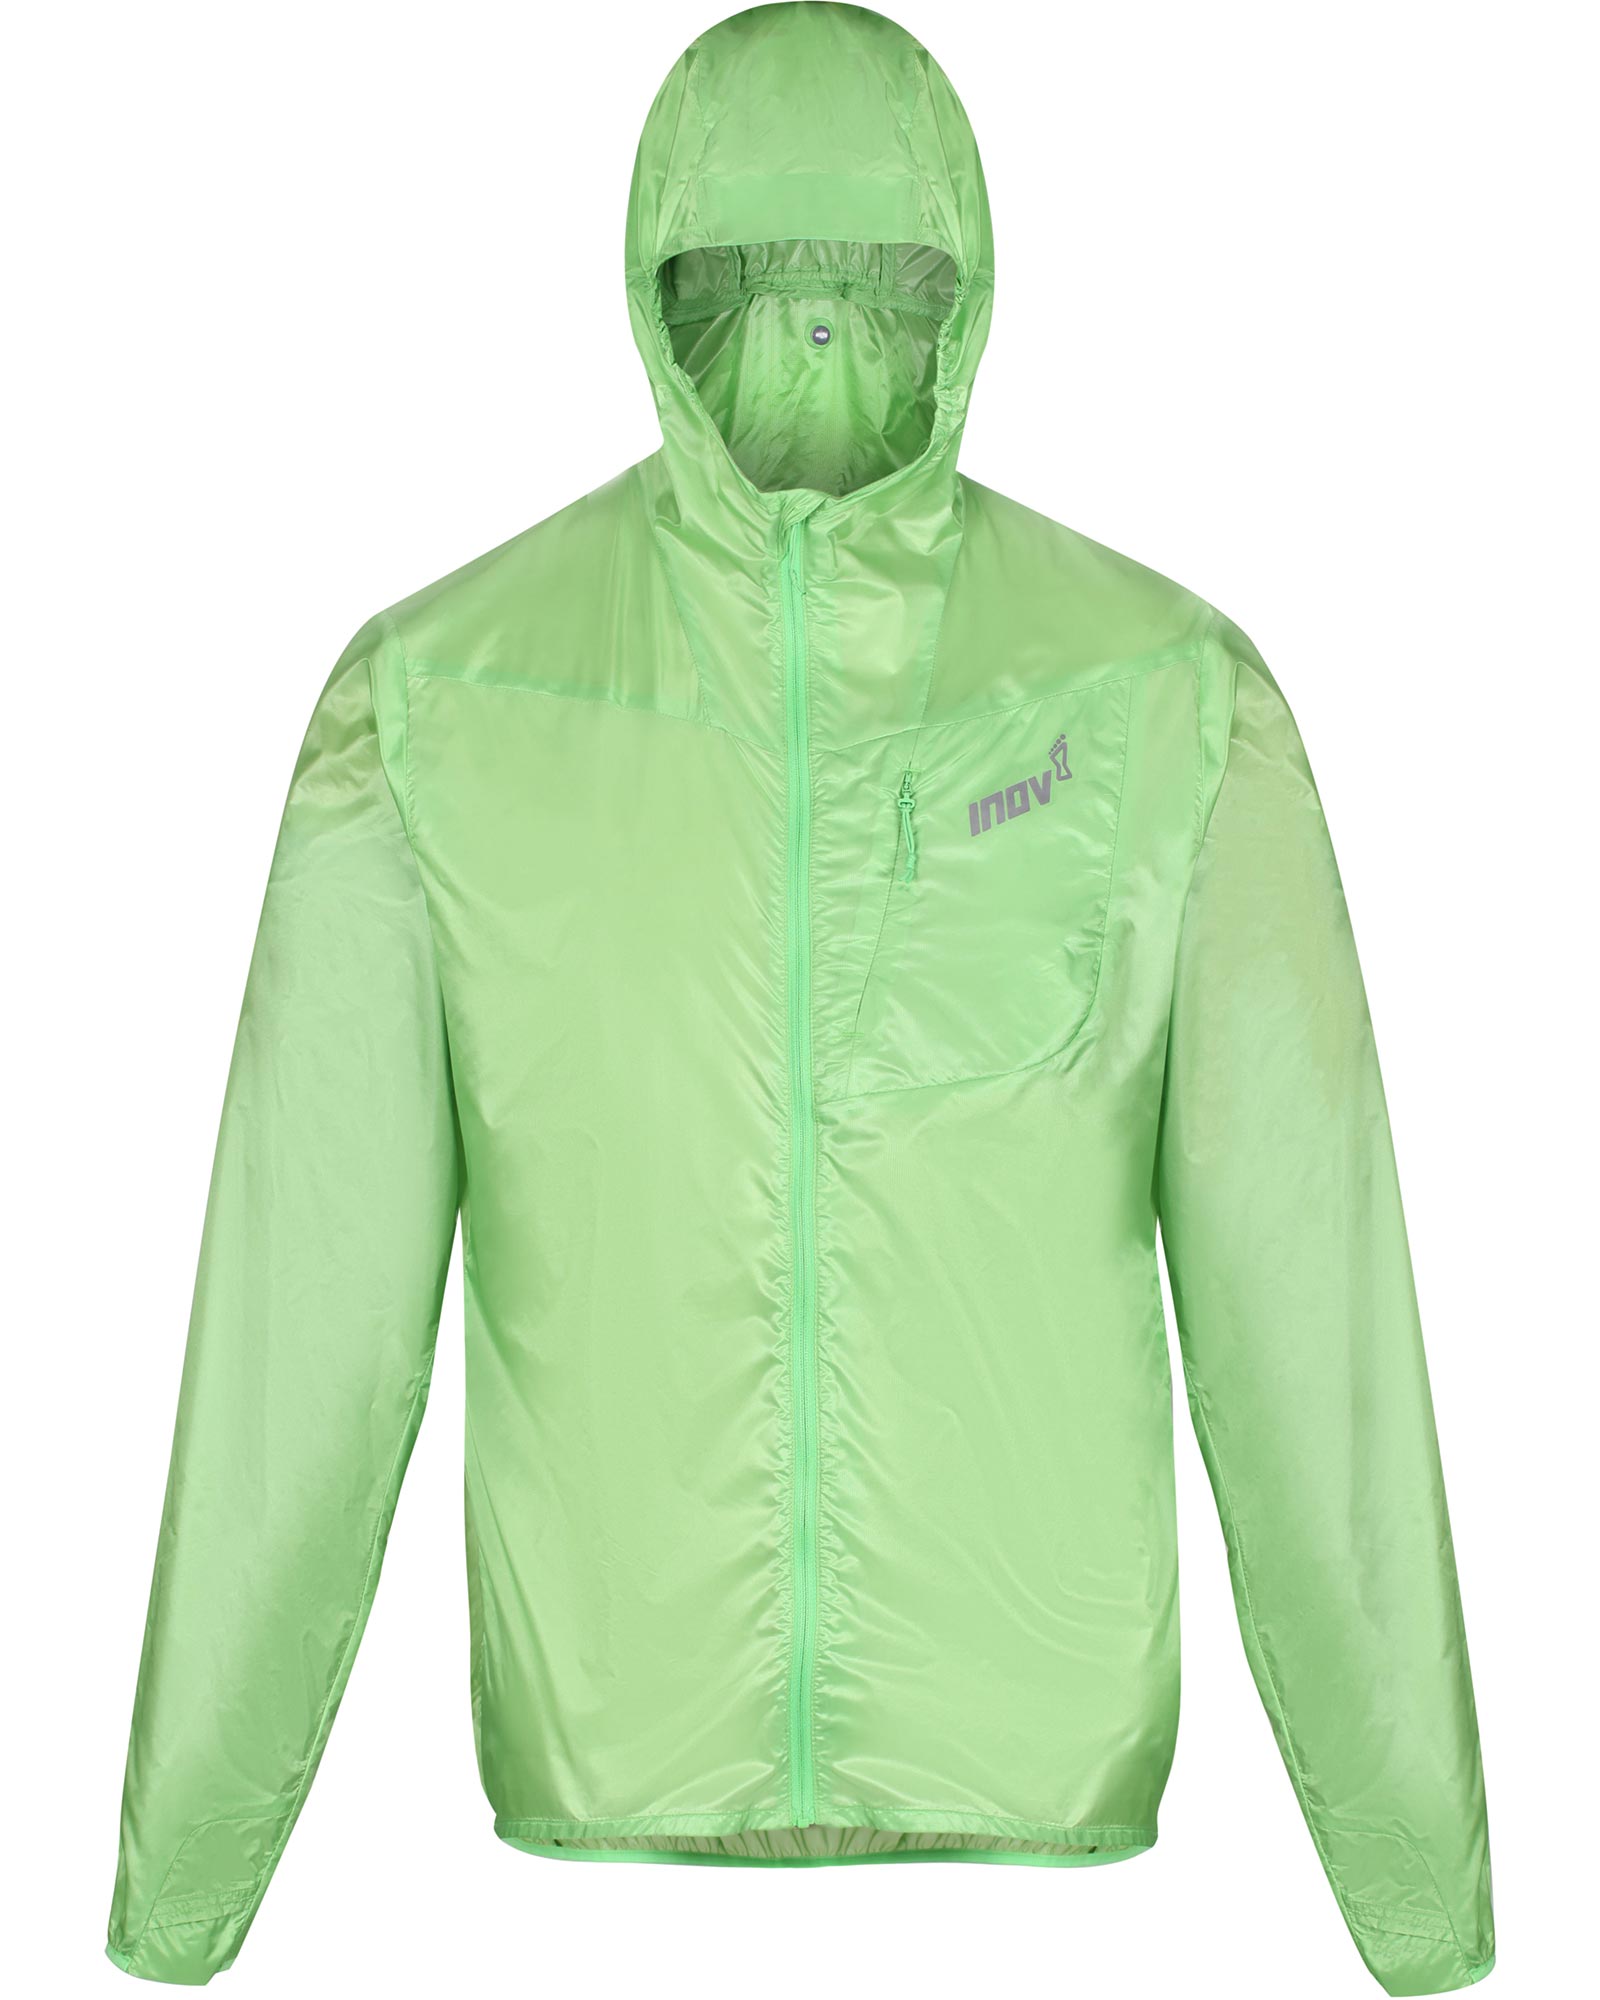 Inov 8 Men’s Full Zip Windshell Jacket - Green L